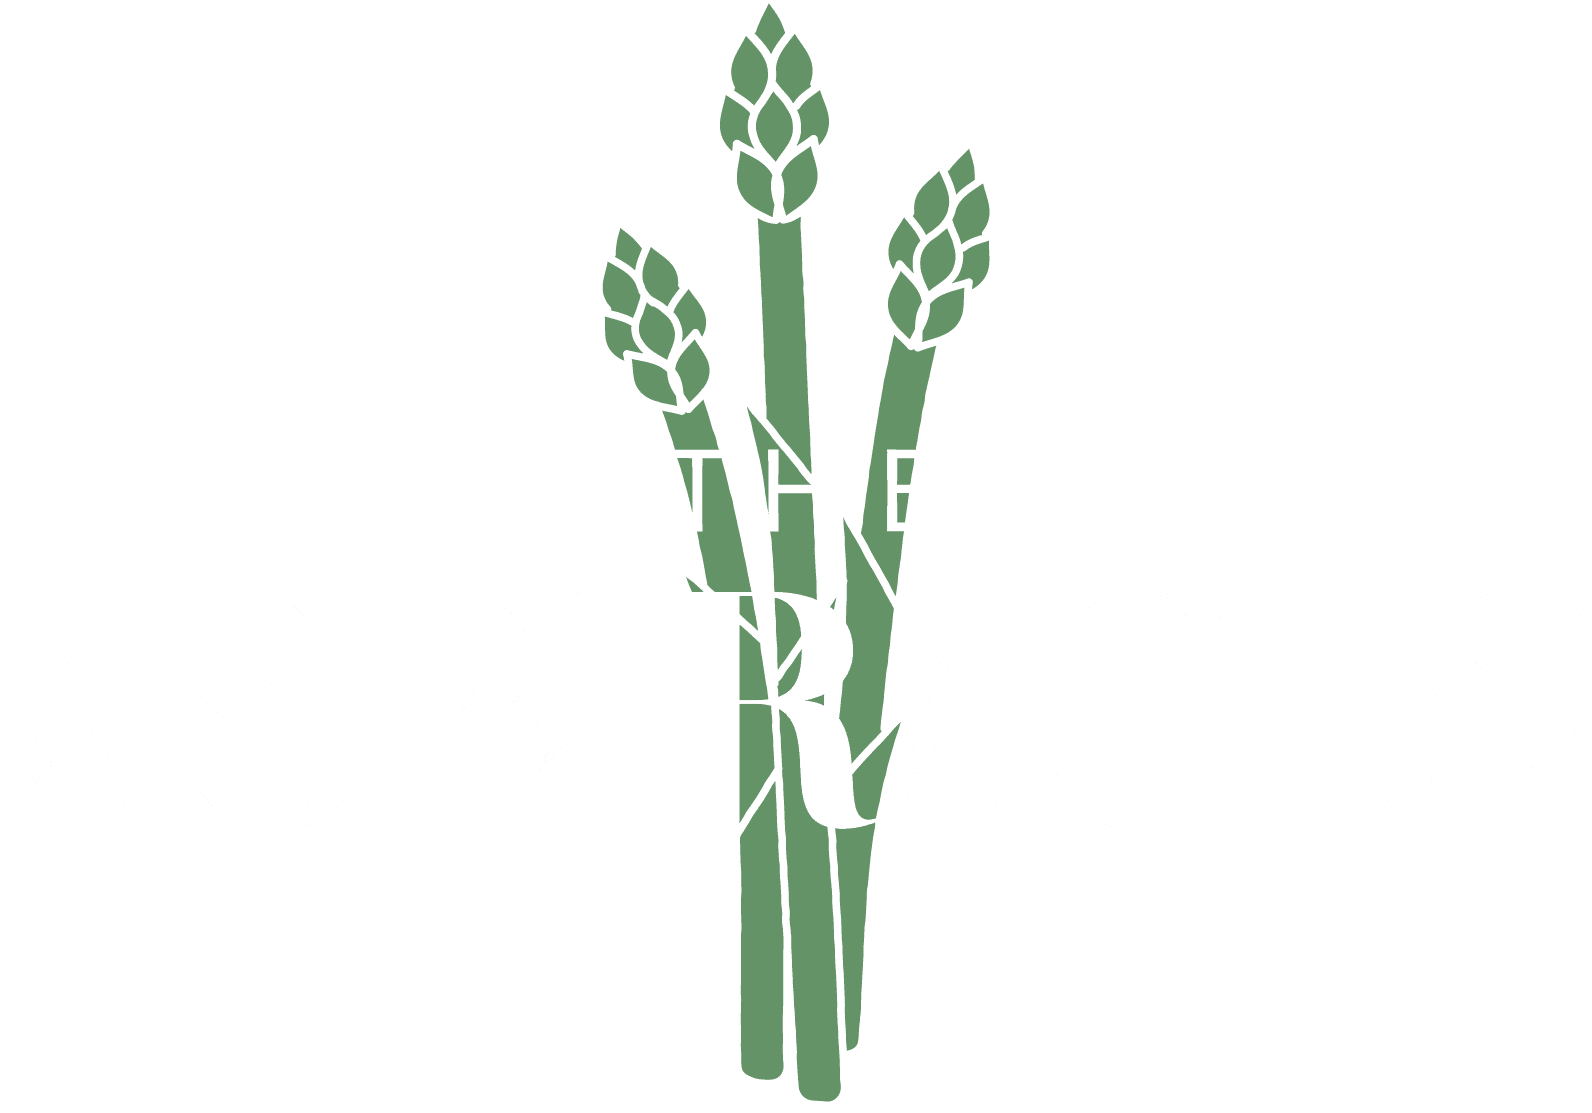 The Asparagus logo